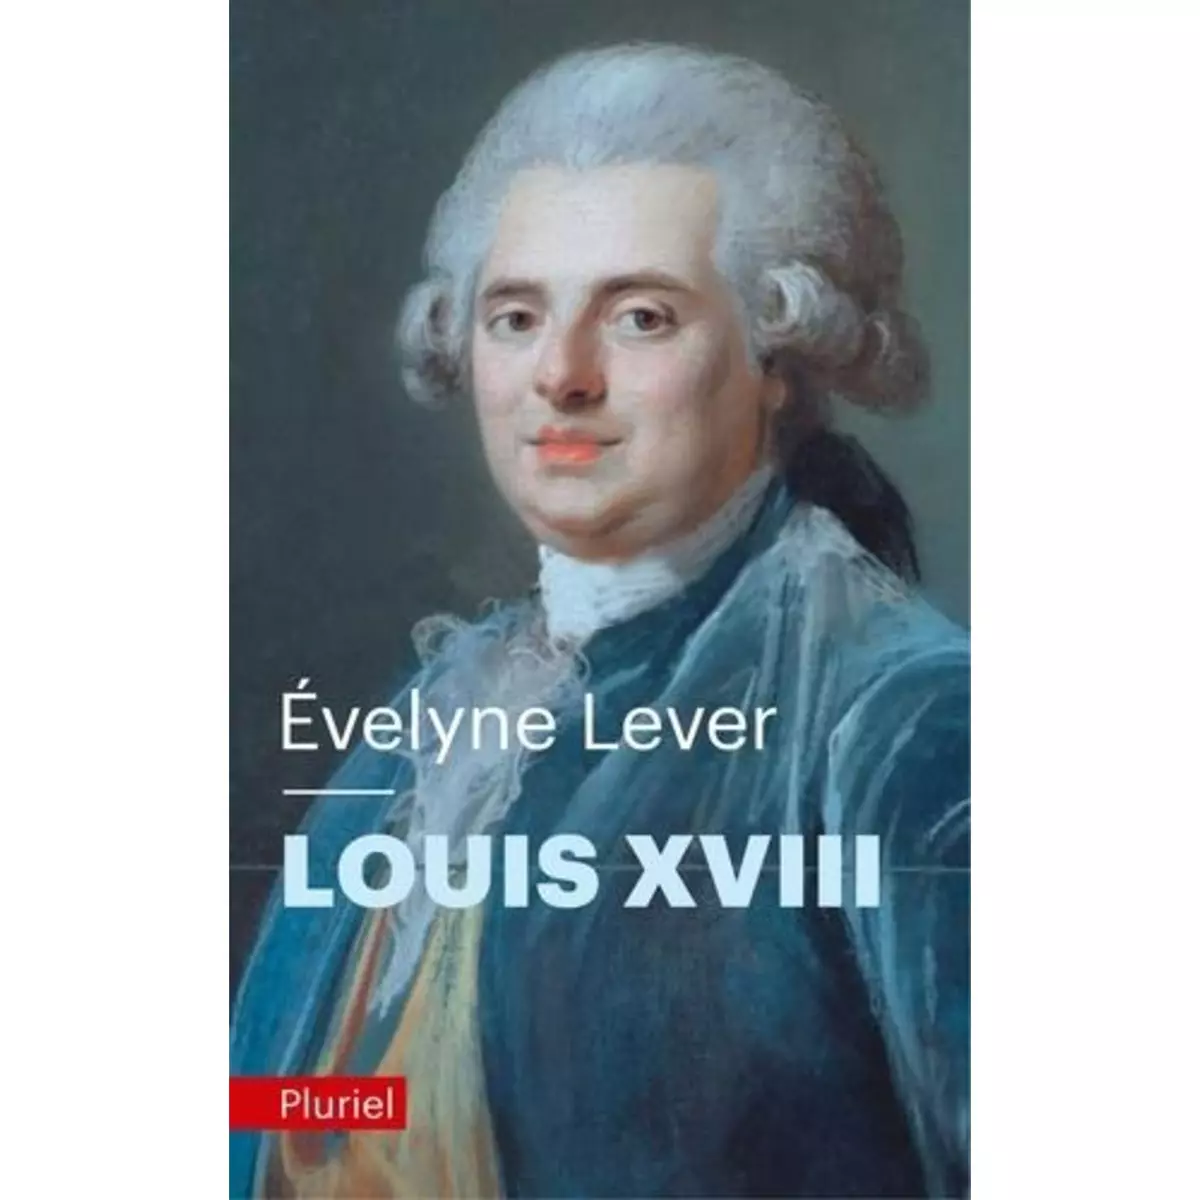  LOUIS XVIII, Lever Evelyne